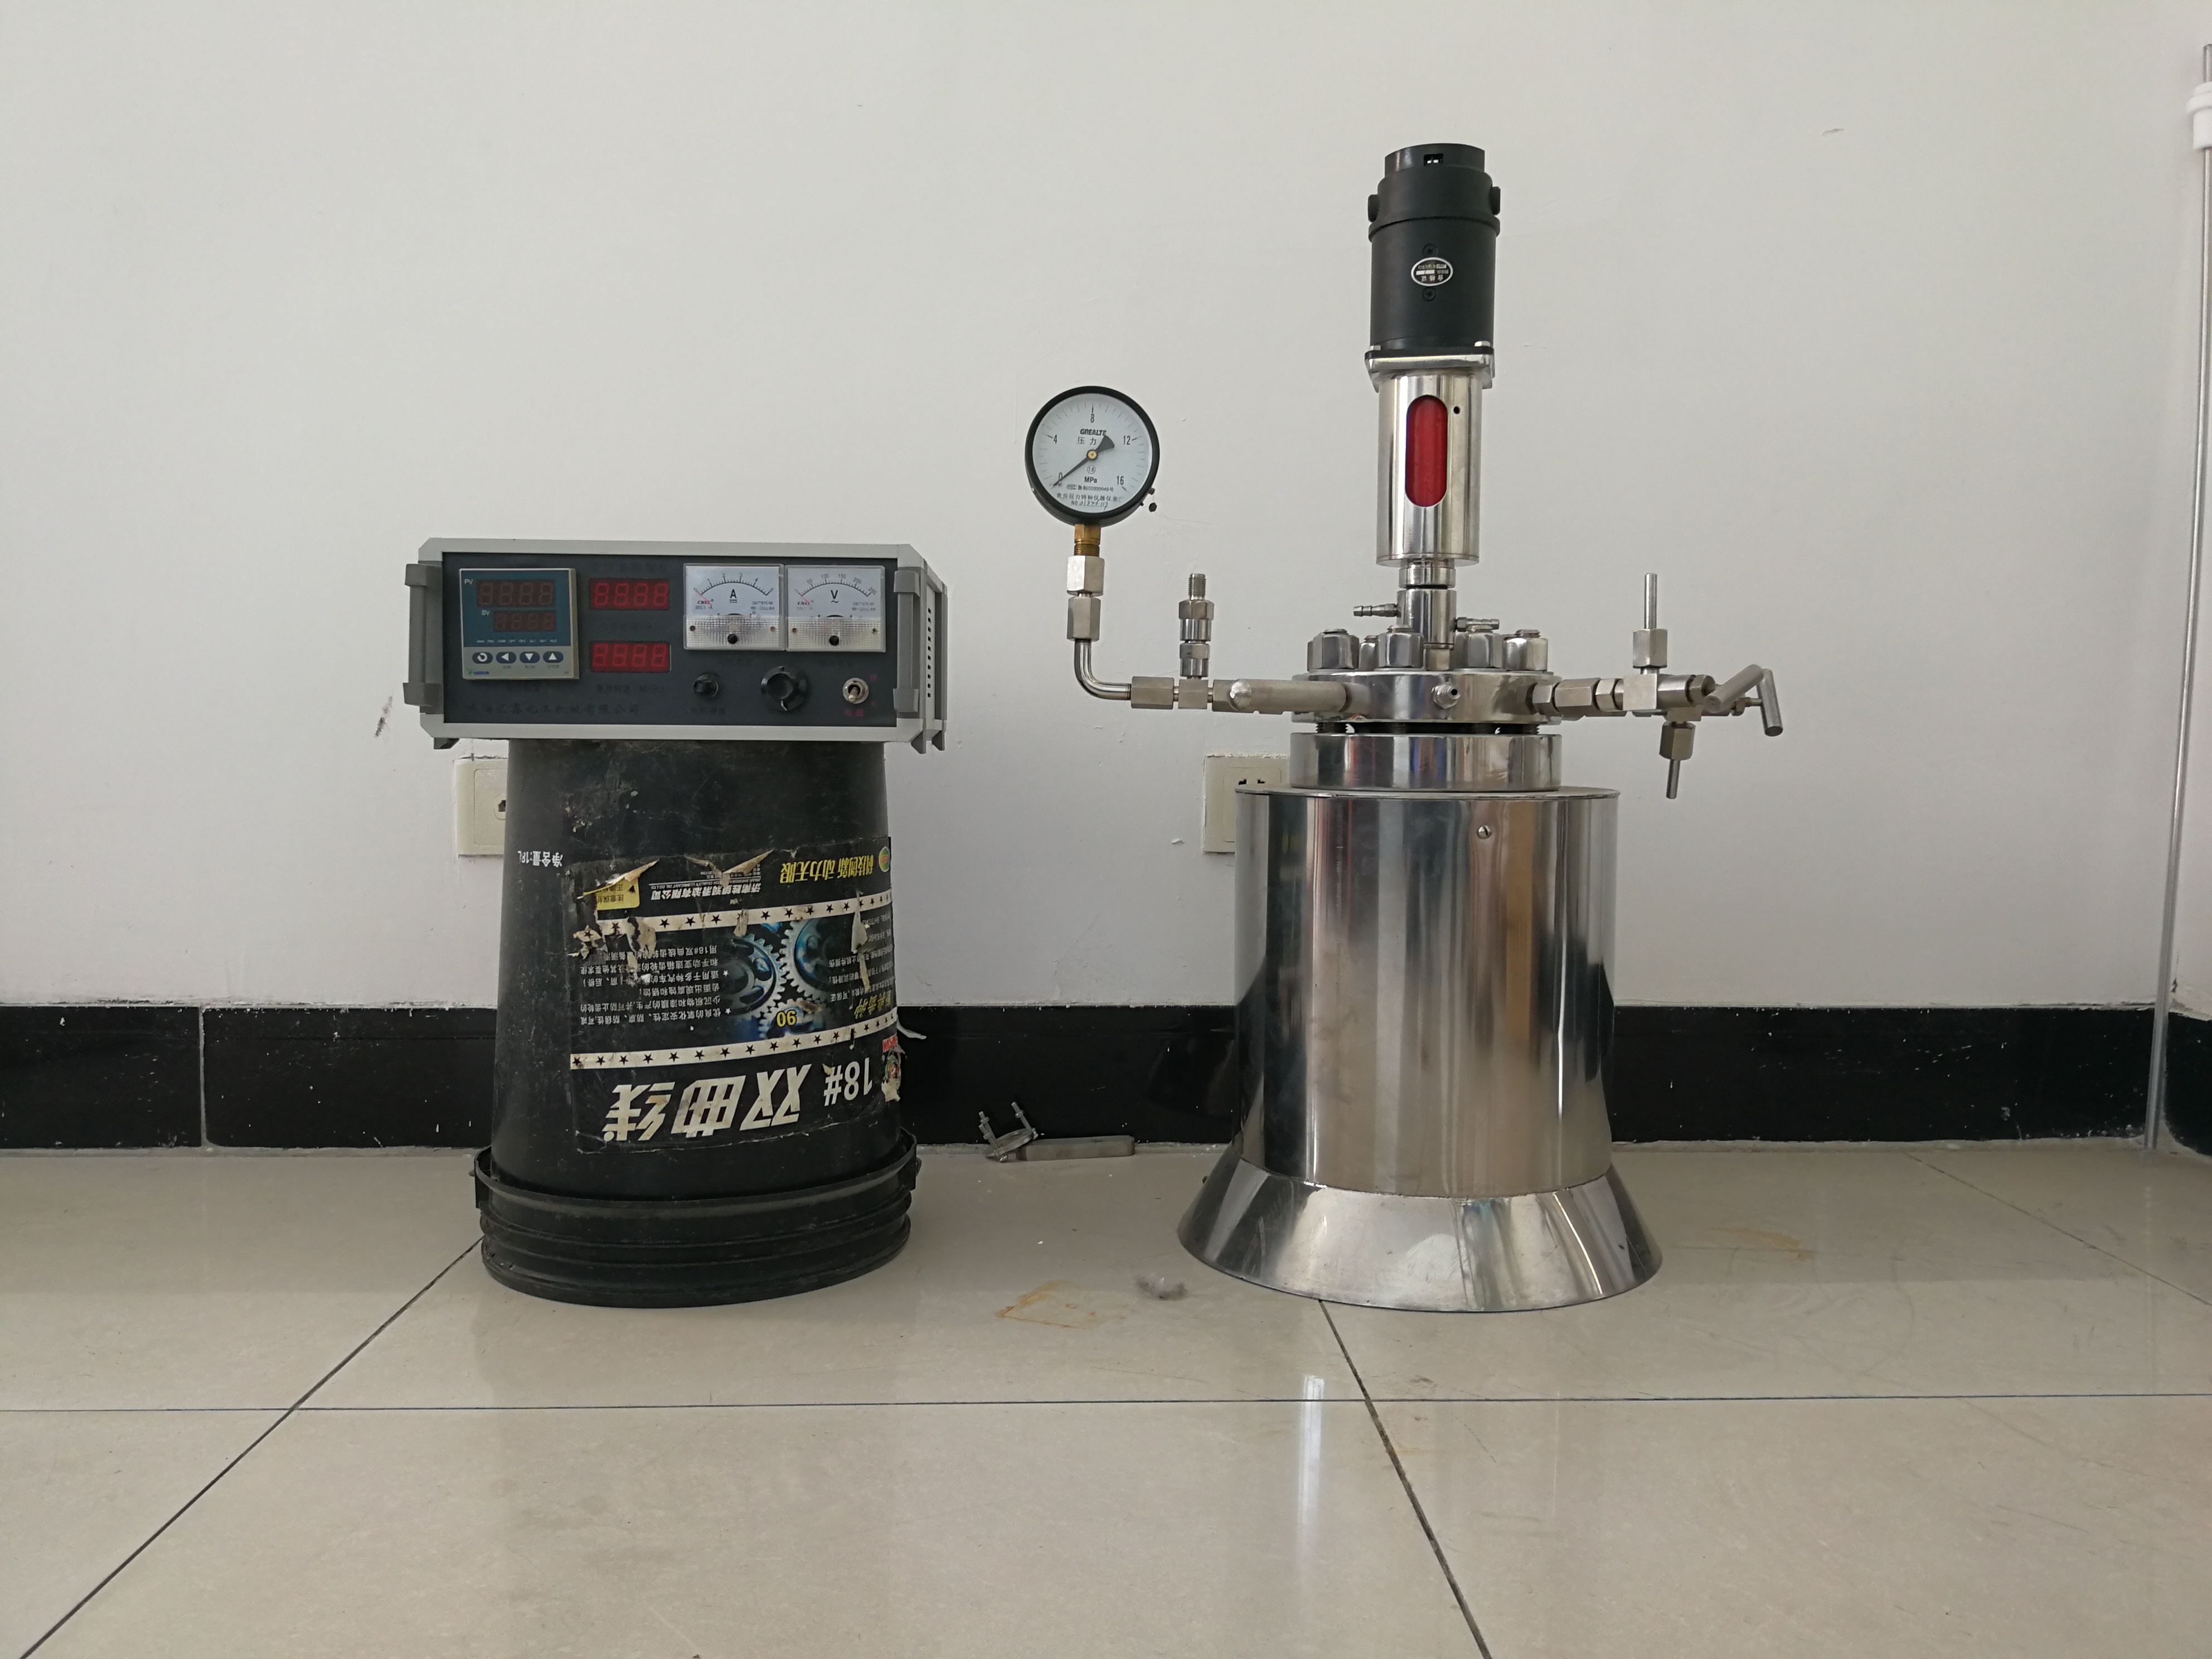 Floor stand pressure reactors